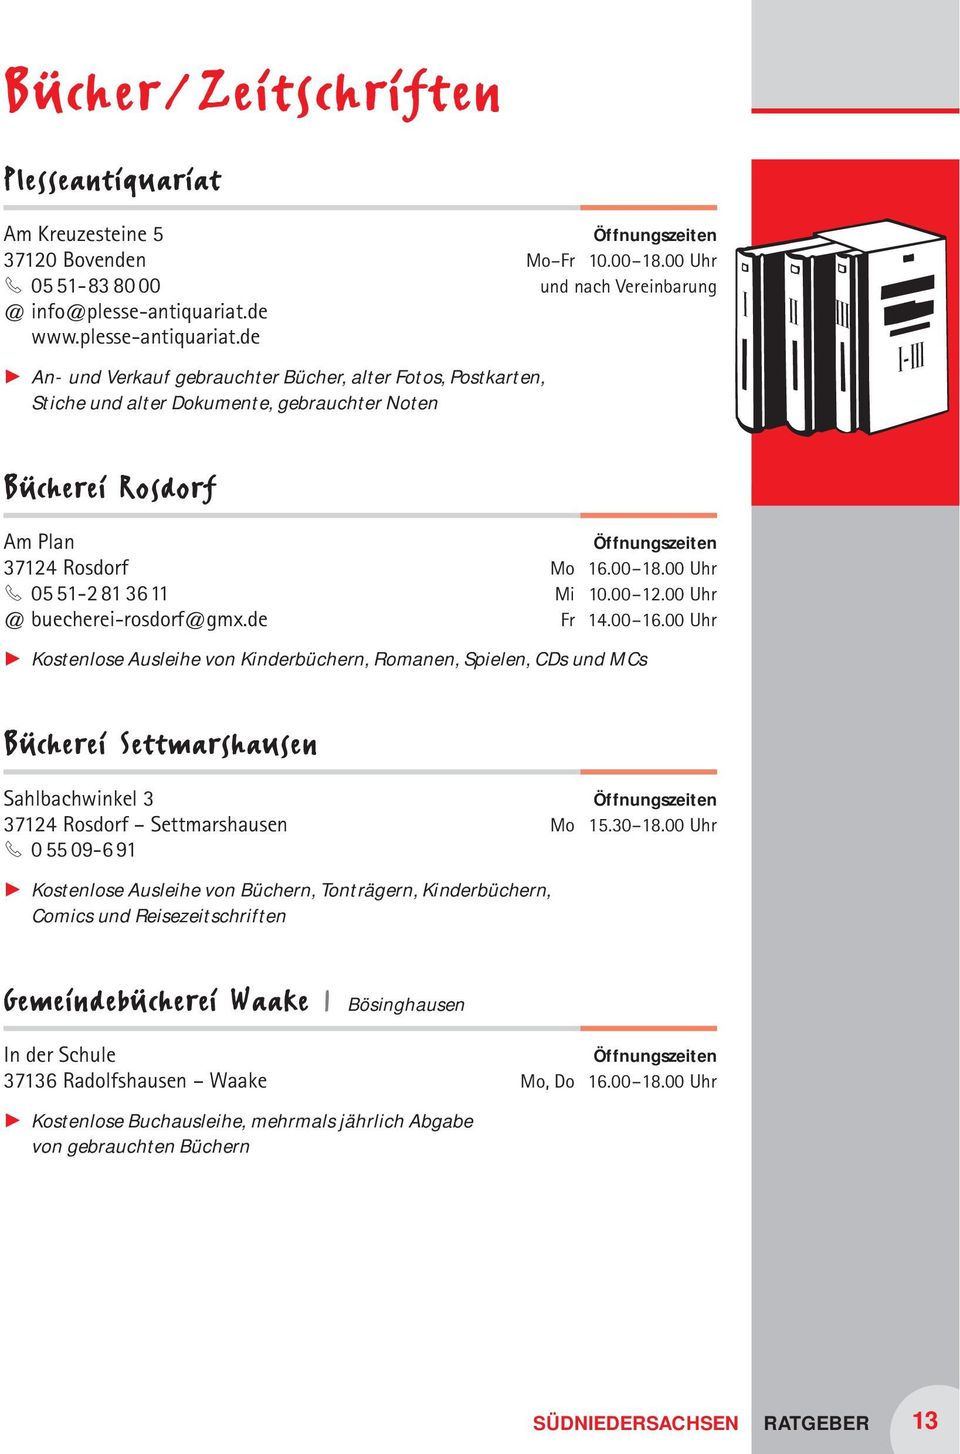 00 Uhr und nach Vereinbarung Bücherei Rosdorf Am Plan 37124 Rosdorf 3 05 51-2 81 3611 @ buecherei-rosdorf@gmx.de Mo 16.00 18.00 Uhr Mi 10.00 12.00 Uhr Fr 14.00 16.